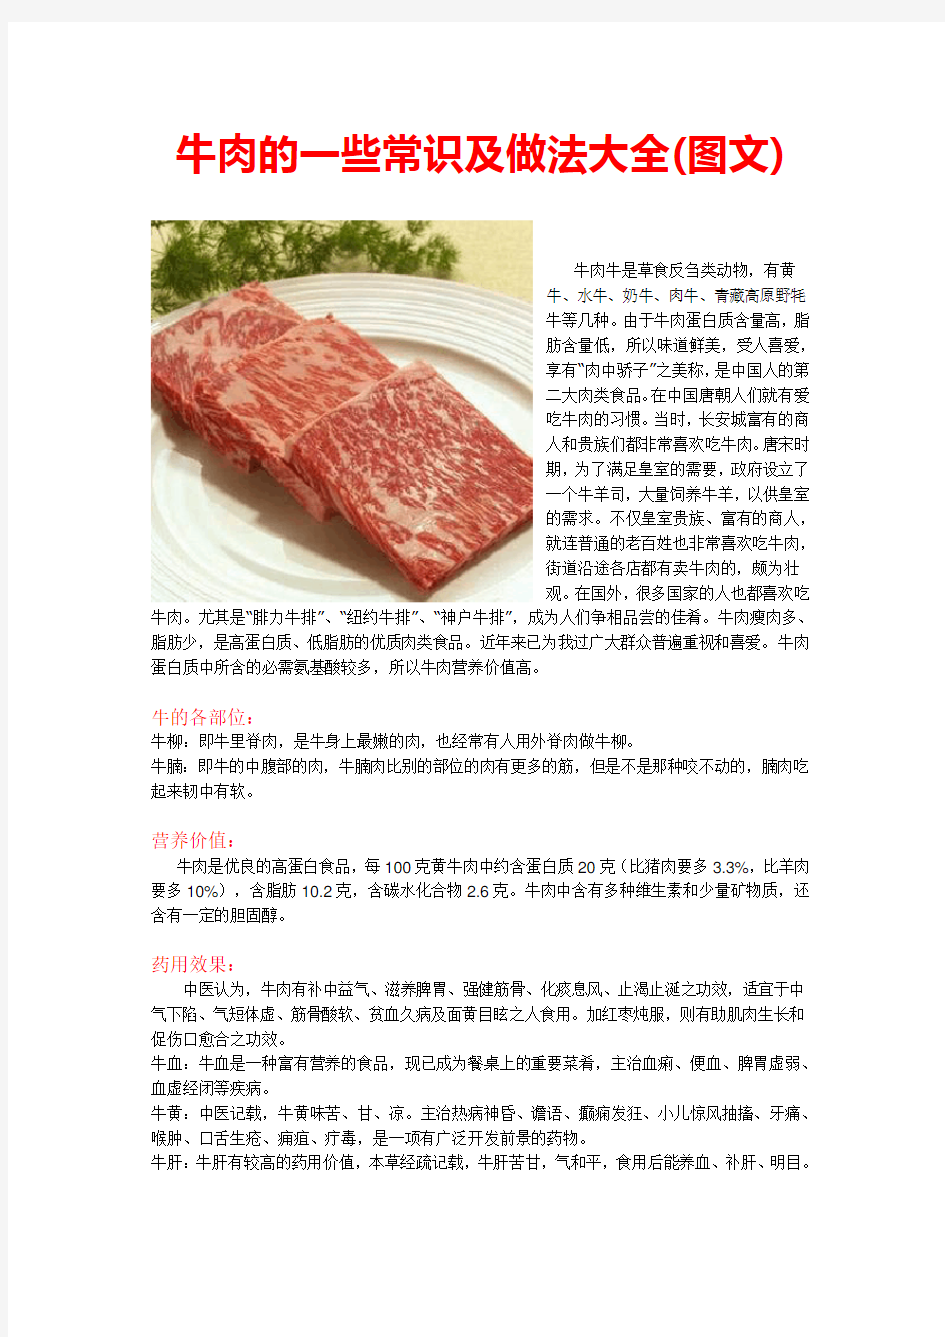 菜谱-牛肉的一些常识及做法大全(图文)